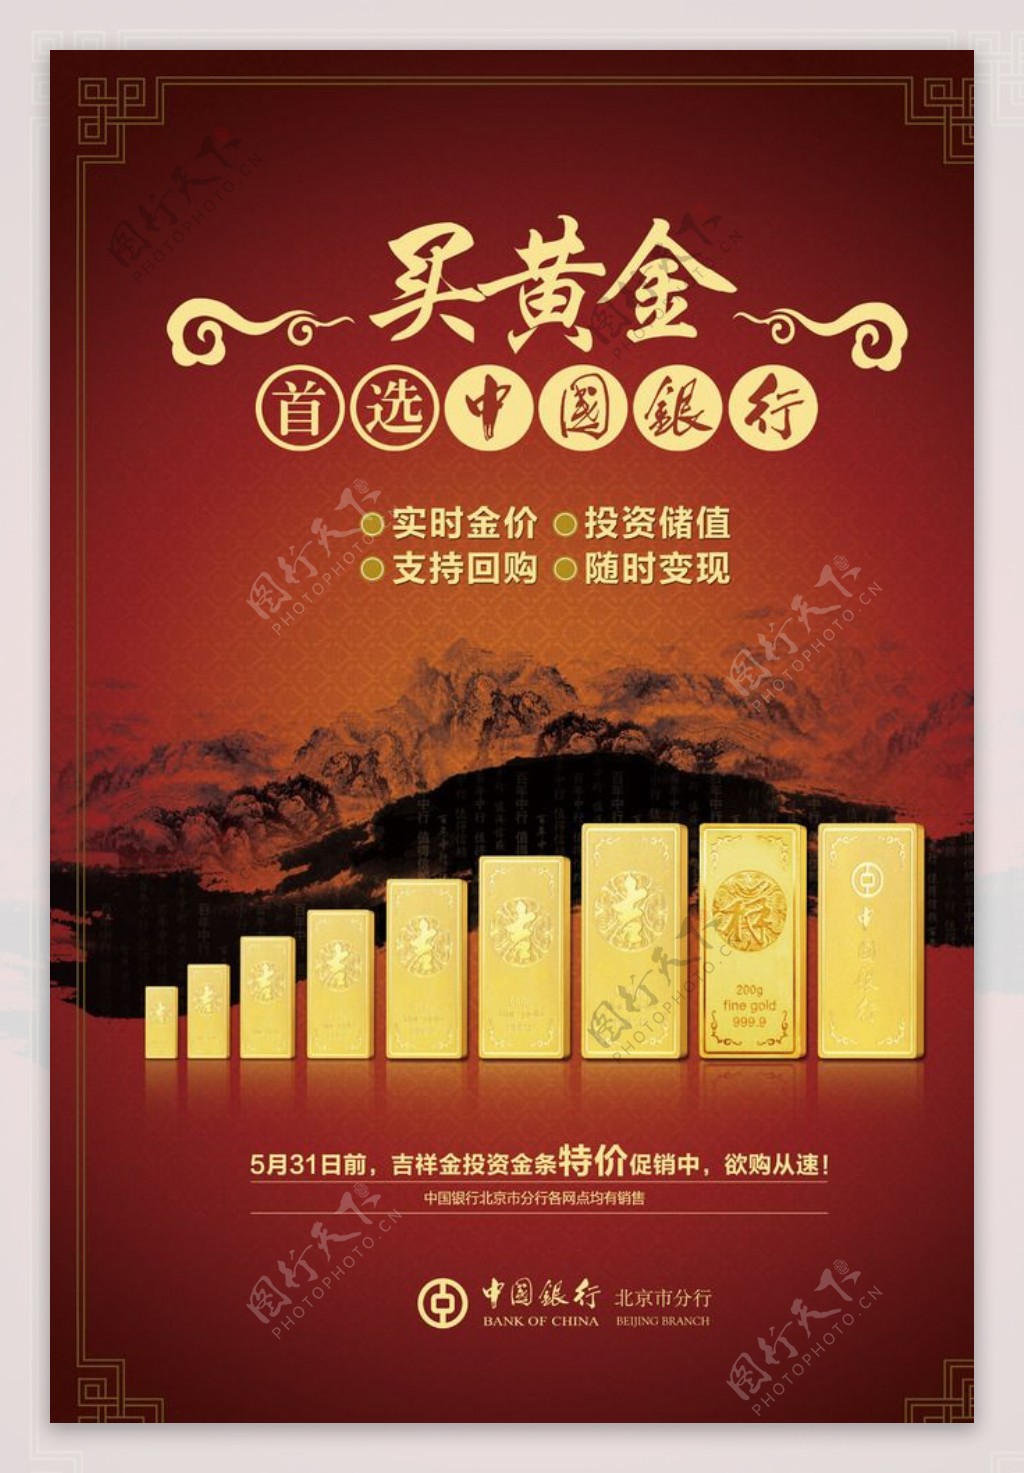 中国银行宣传海报